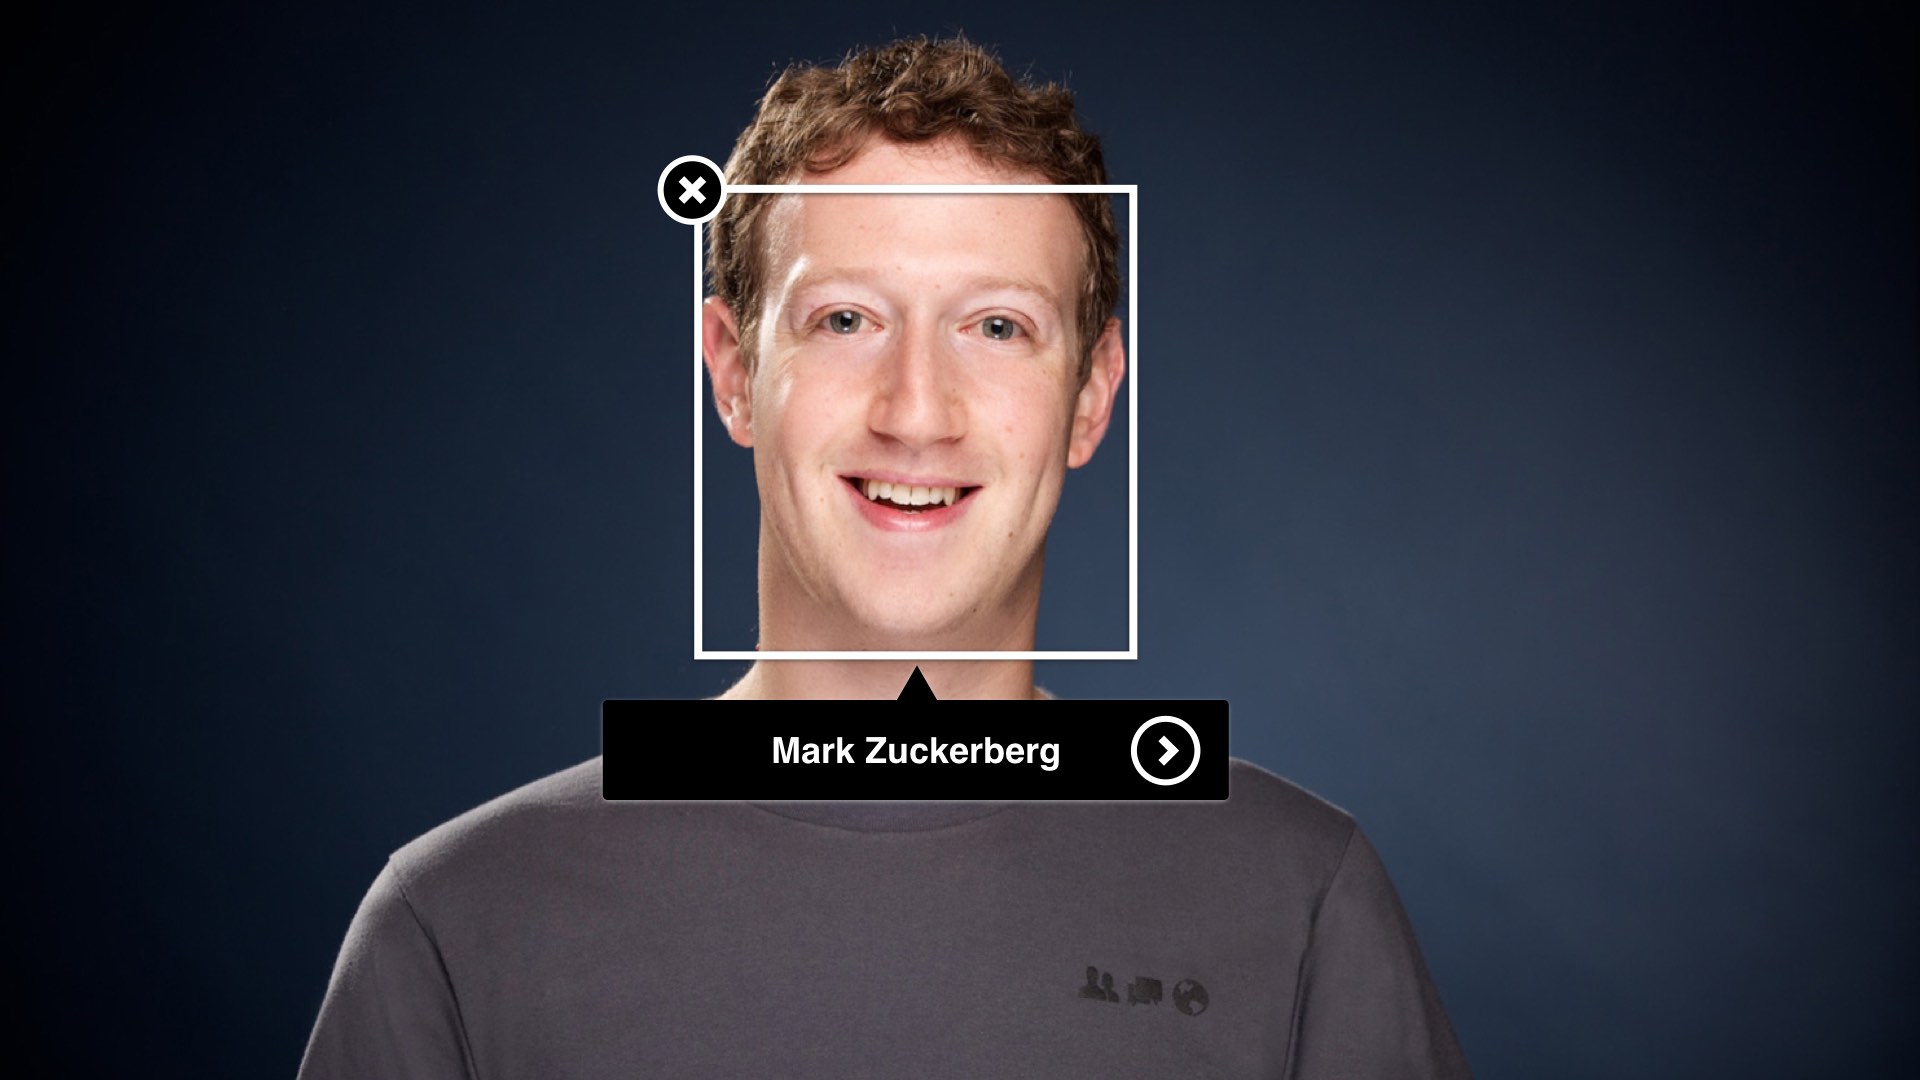 Facebook більше не буде використовувати систему розпізнавання облич для позначення користувачів на фото та відео. Чому?